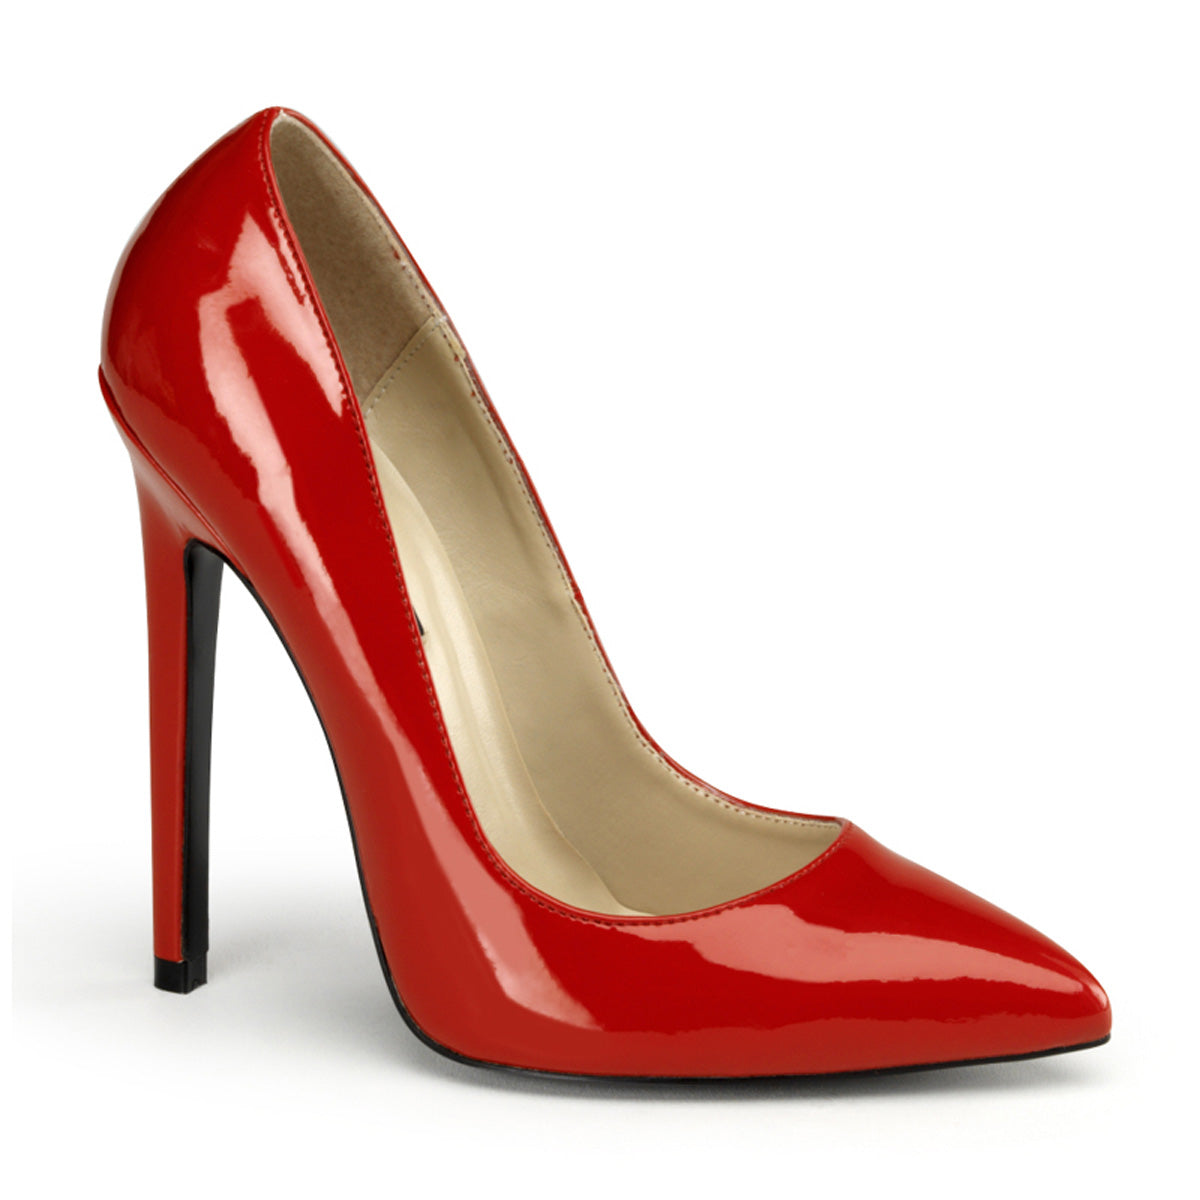 Sexy-20 Pleaser Shoes 5 pulgadas Heel Red Fetish Calzado